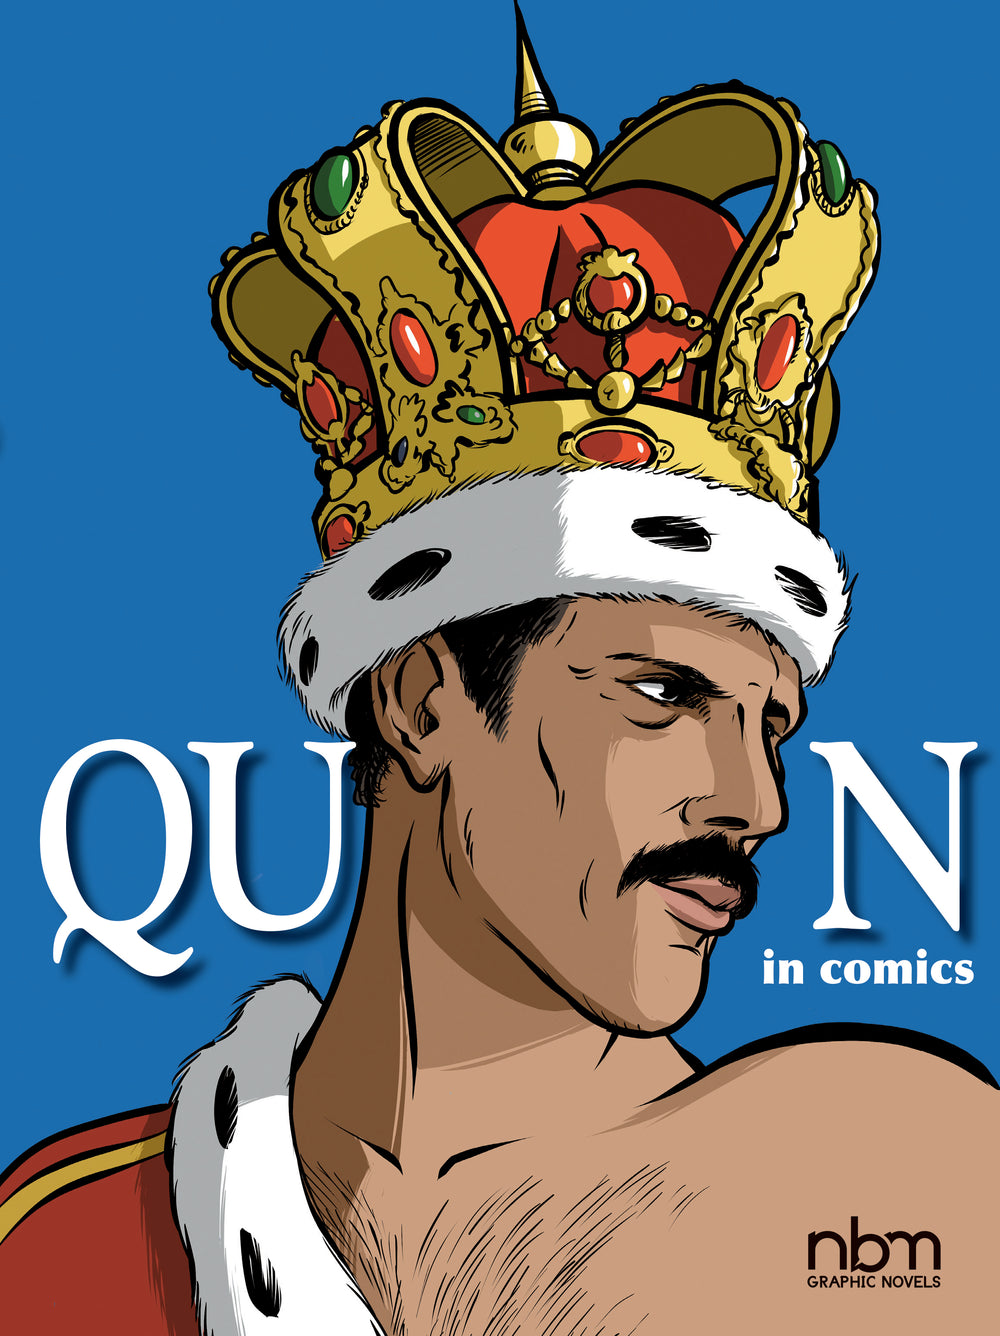 Queen in Comics